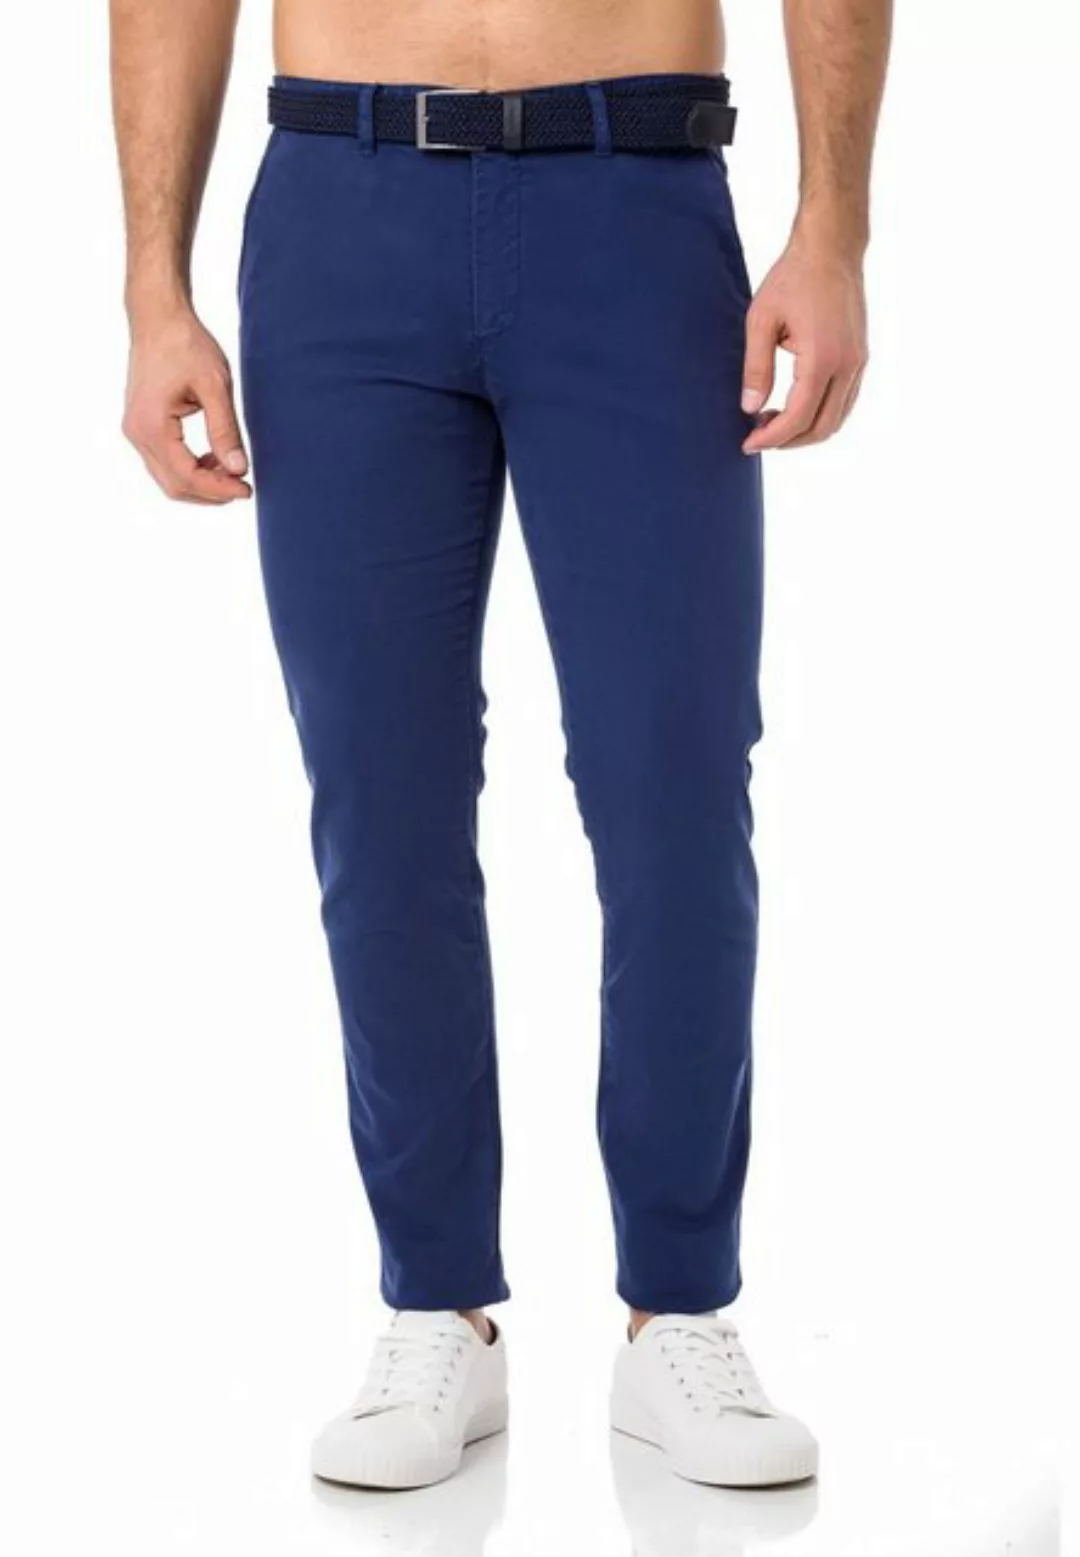 RedBridge Chinohose Chino Hose Pants mit Gürtel Indigo W29 L32 günstig online kaufen